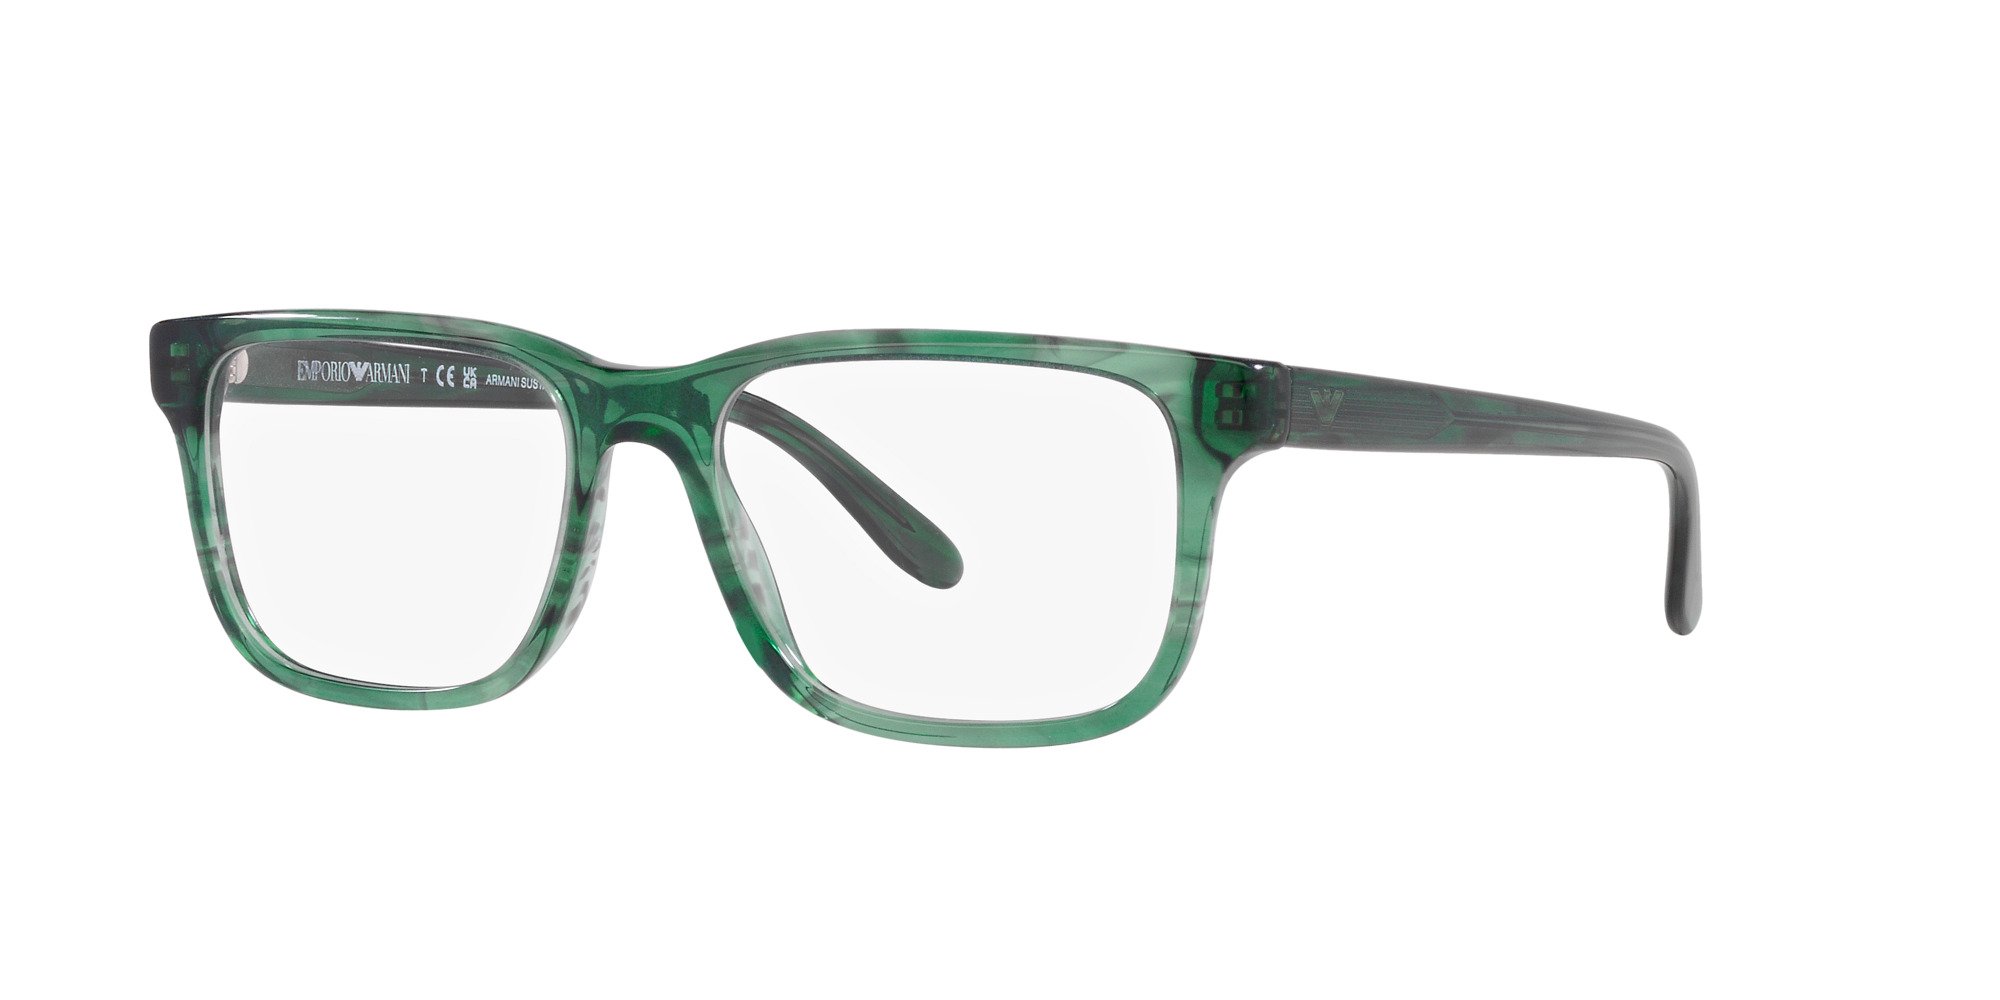 Das Bild zeigt die Korrektionsbrille EA3218 5168 von der Marke Emporio Armani in Grün.